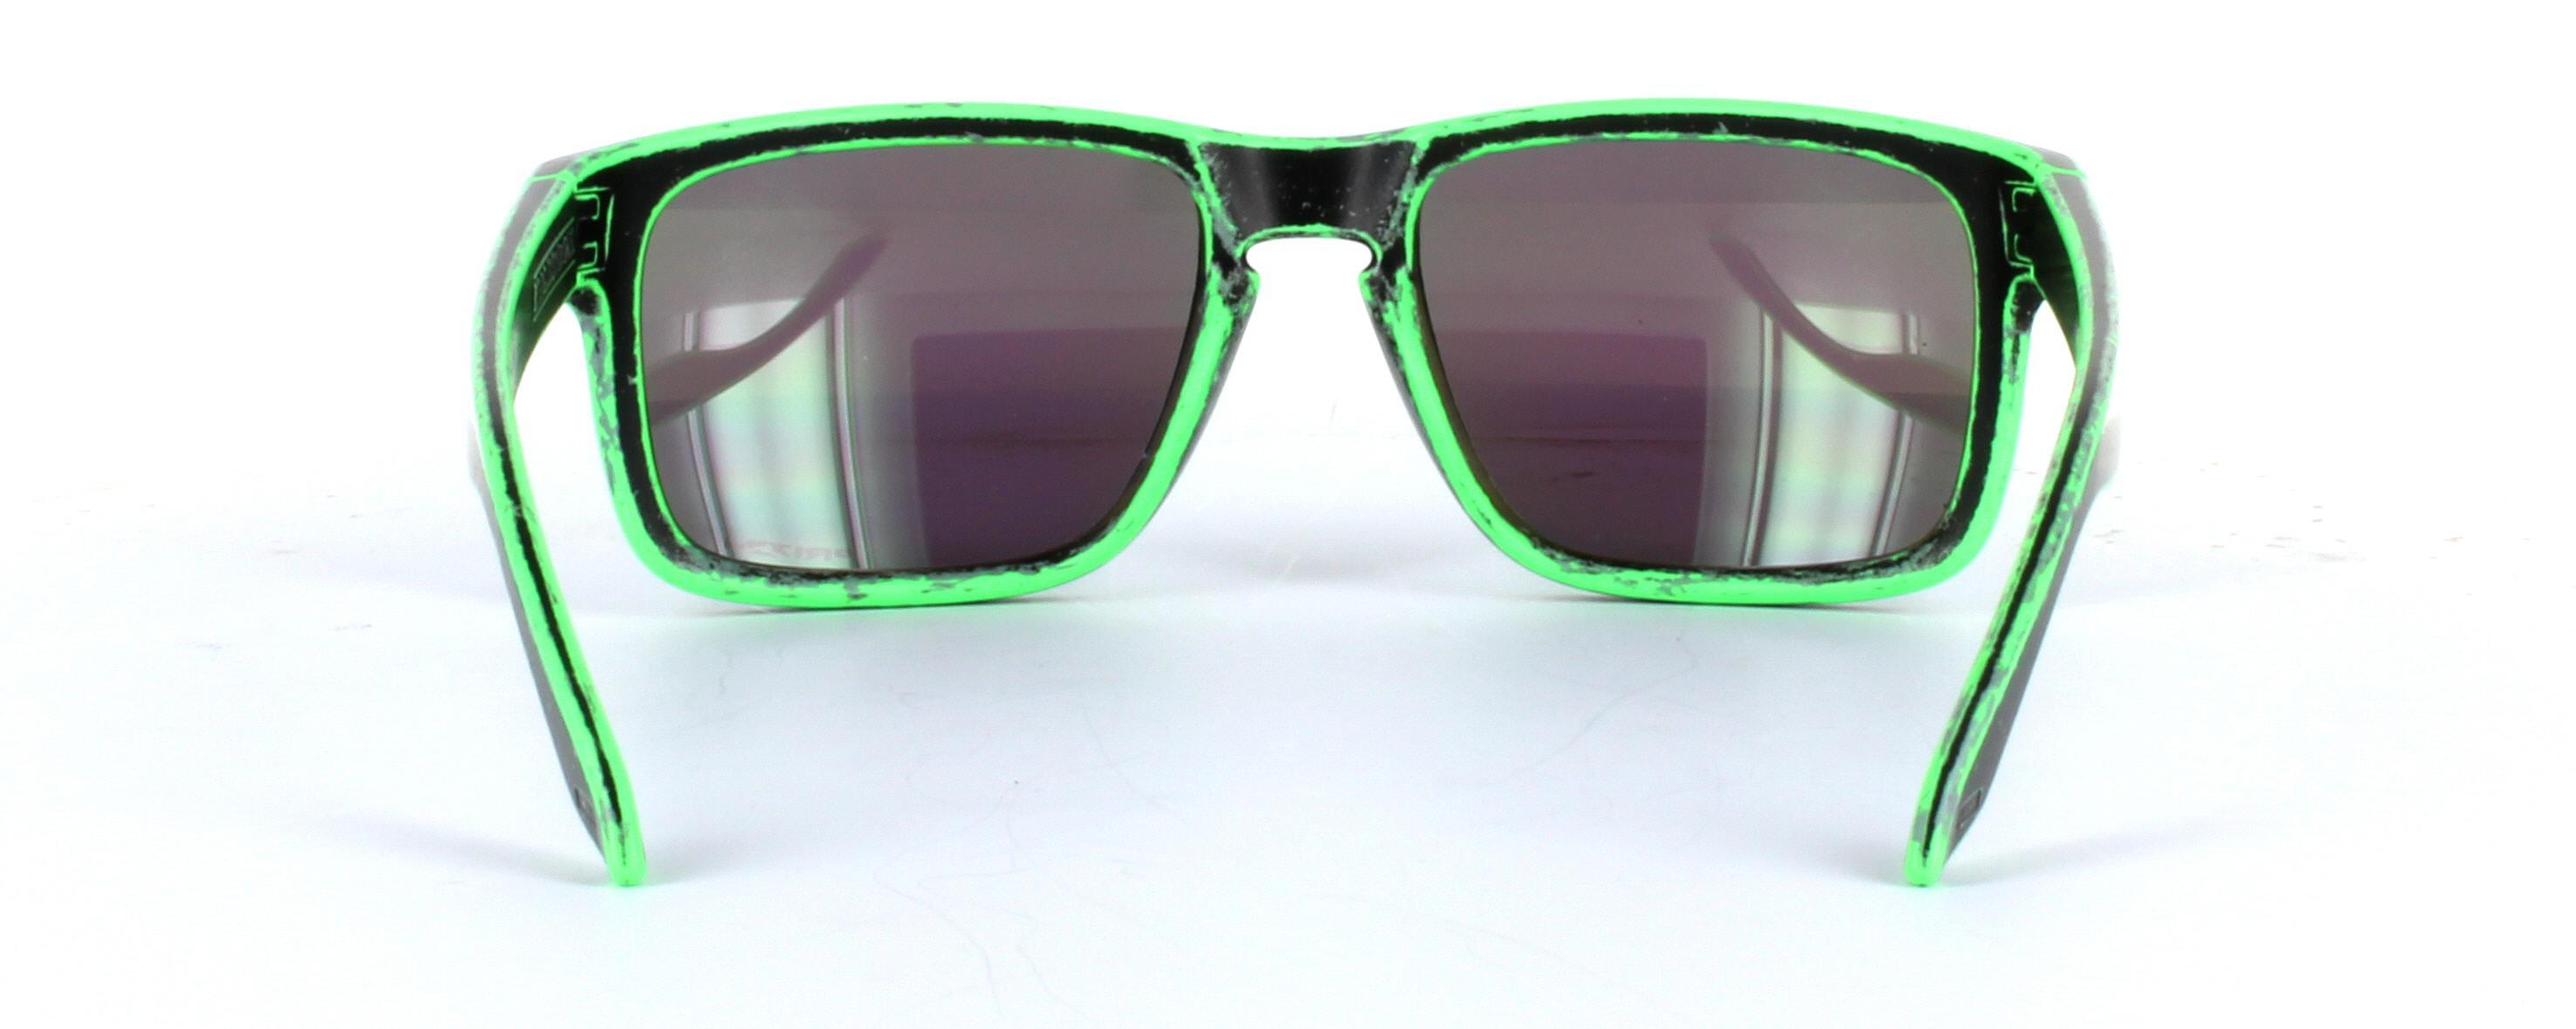 Oakley (9102) Black Full Rim Plastic Prescription Sunglasses - Image View 3